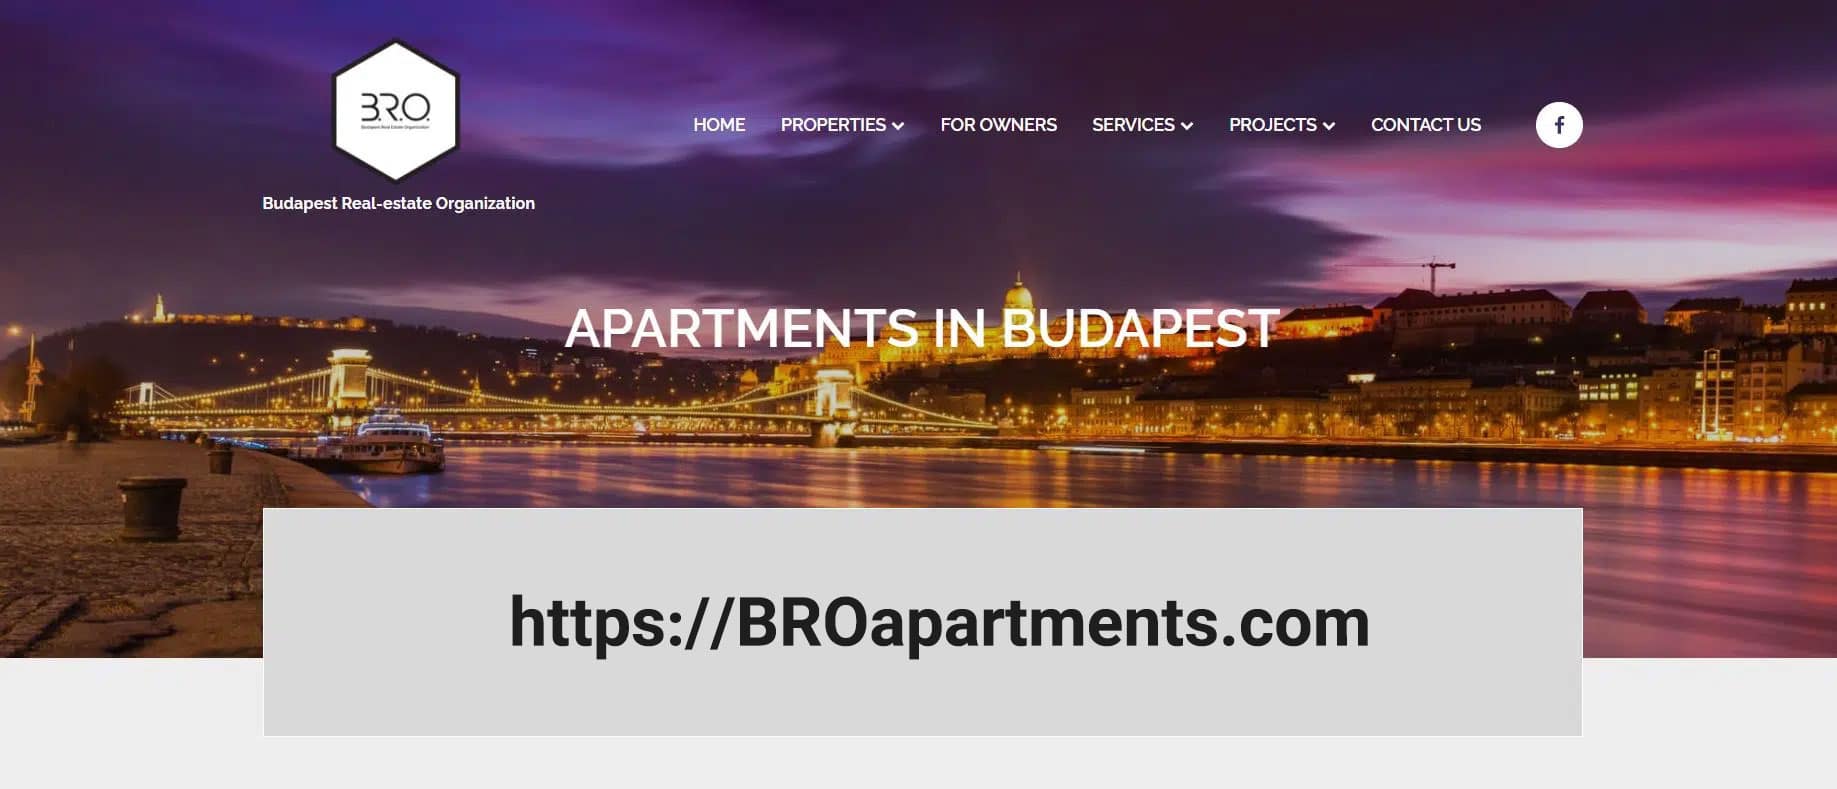 خرید ملک و خانه در مجارستان